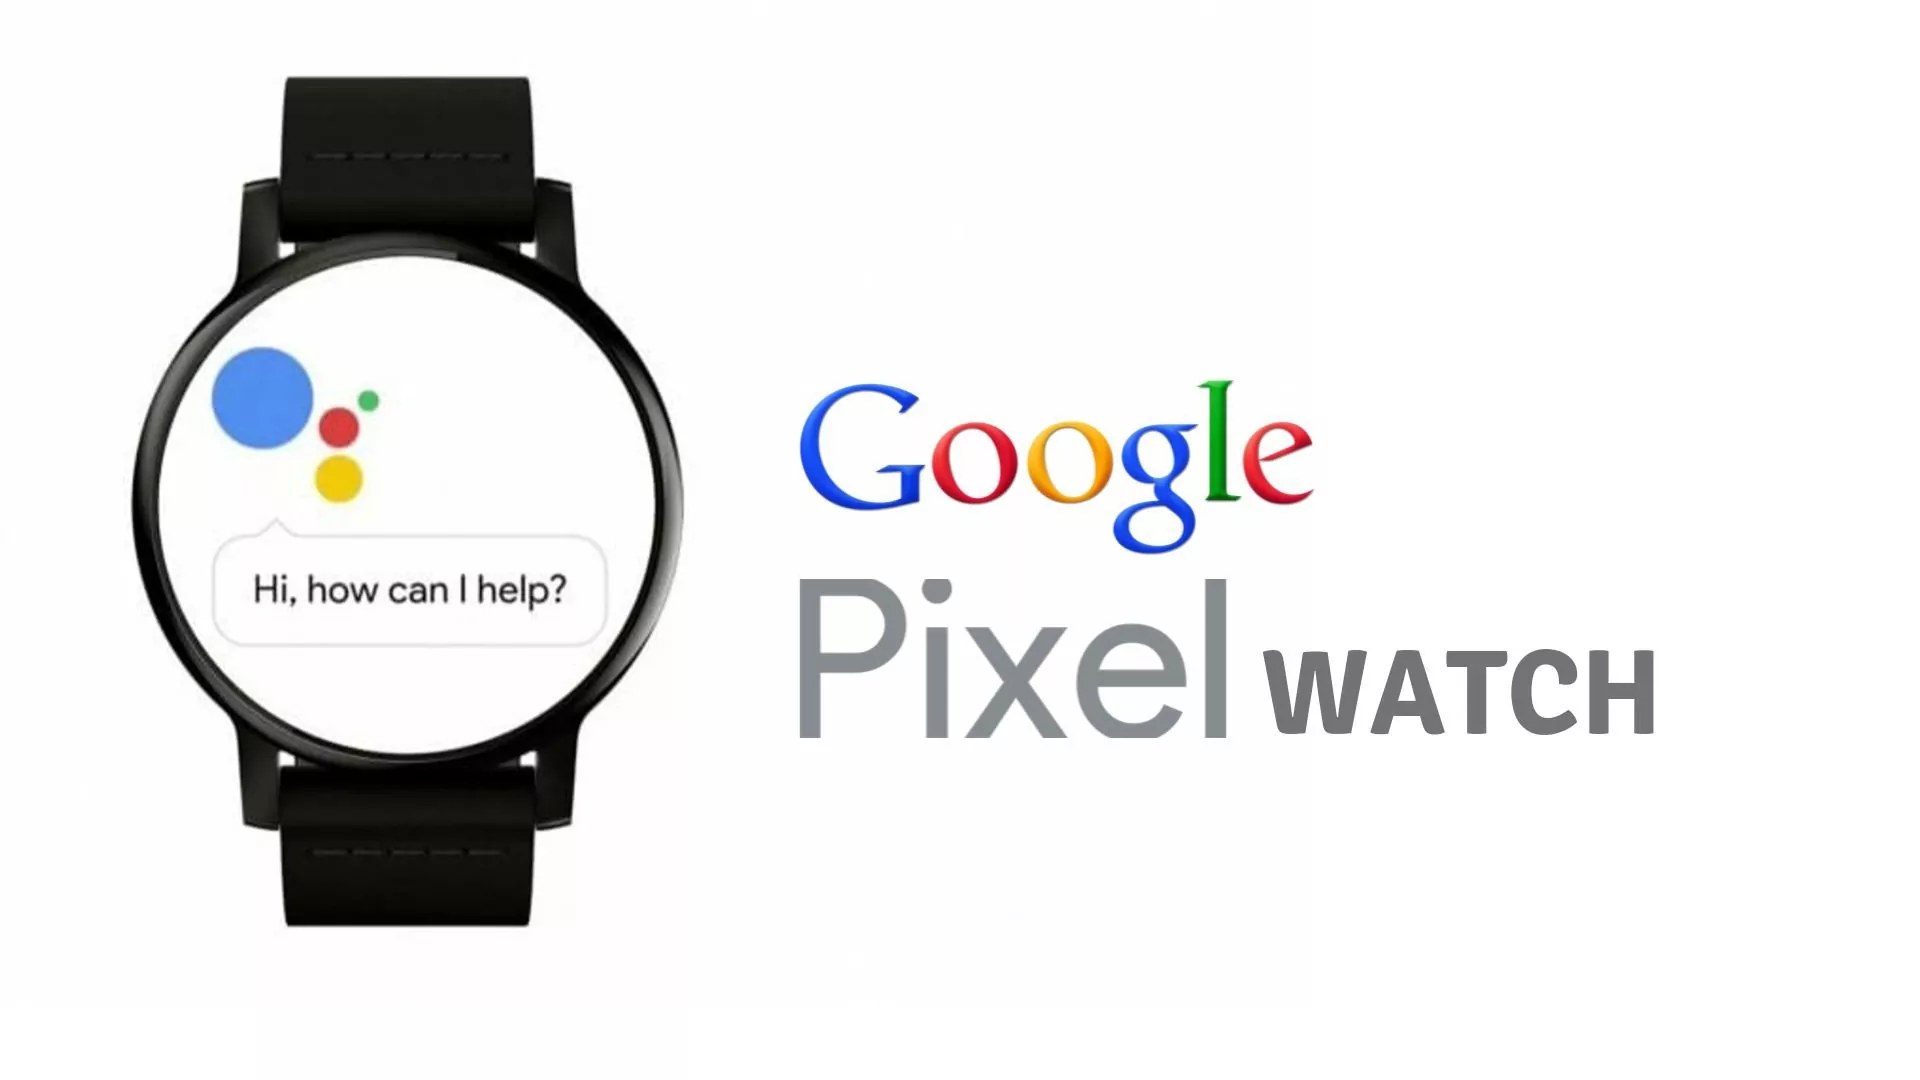 Google Pixel Watch Release Date